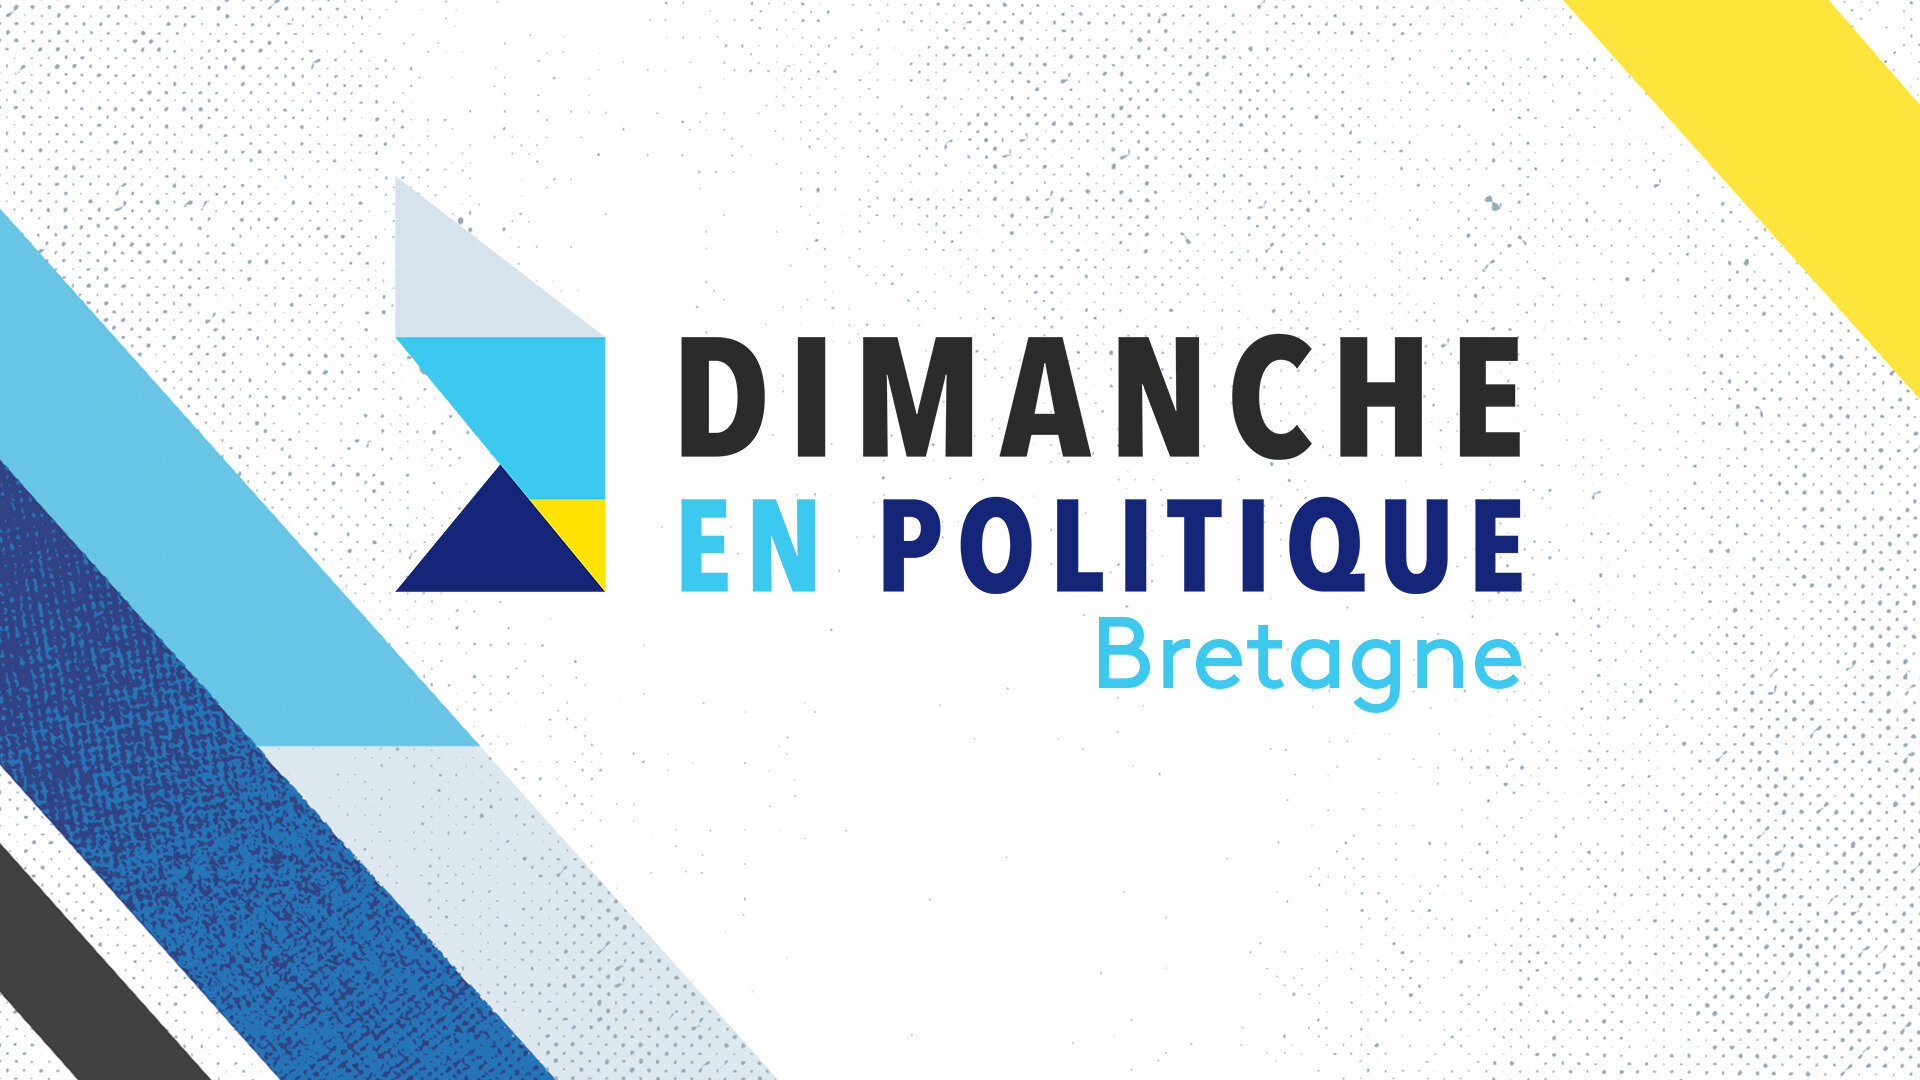 Dimanche en politique - Bretagne : Spécial Santé Loudéac